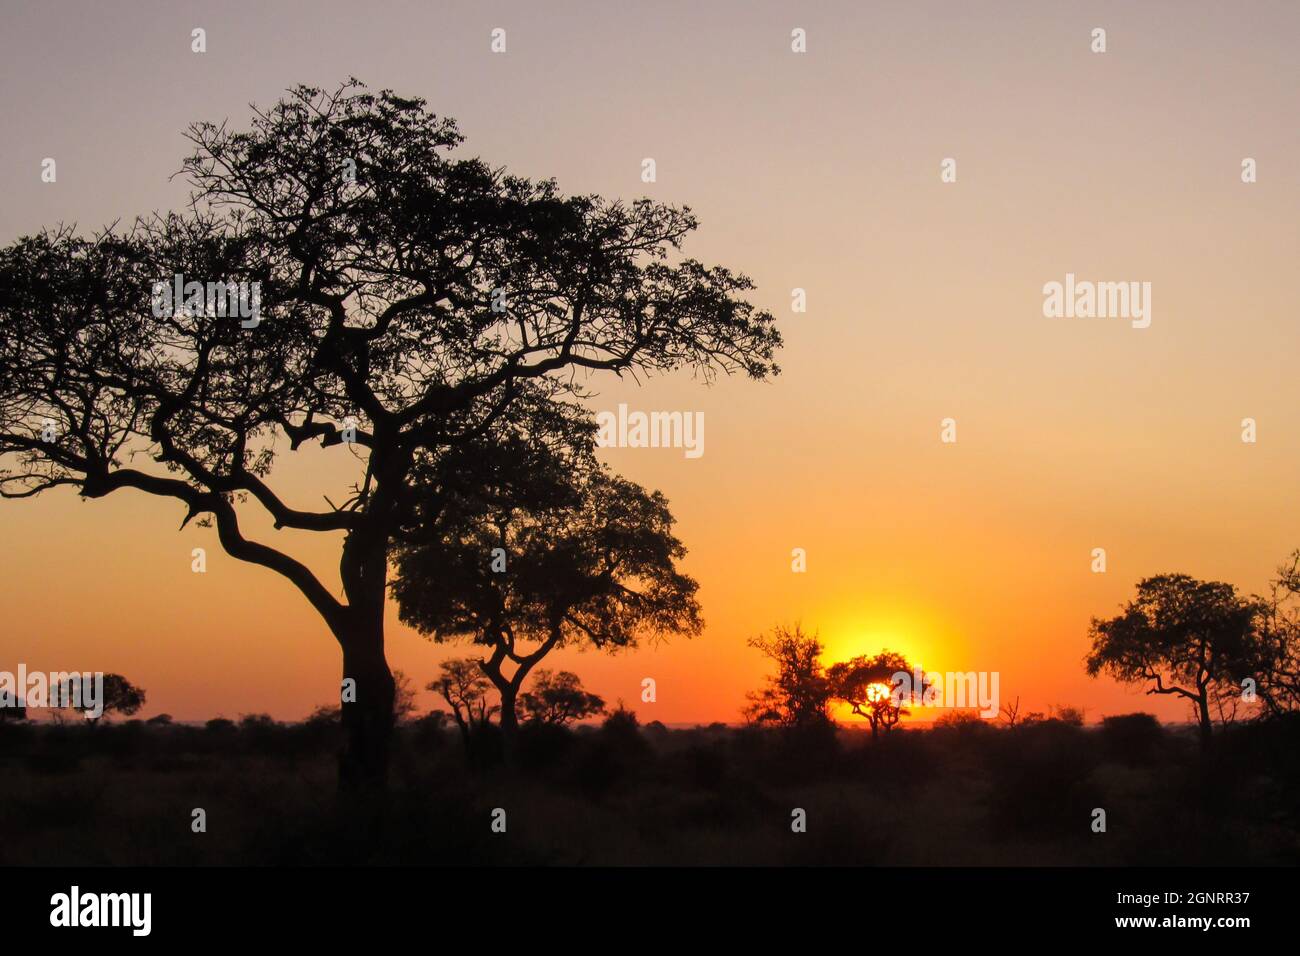 Silhouettes des différents arbres dans la savane boisée du Parc National Kruger en Afrique du Sud, contre un ciel orange doré au lever du soleil Banque D'Images